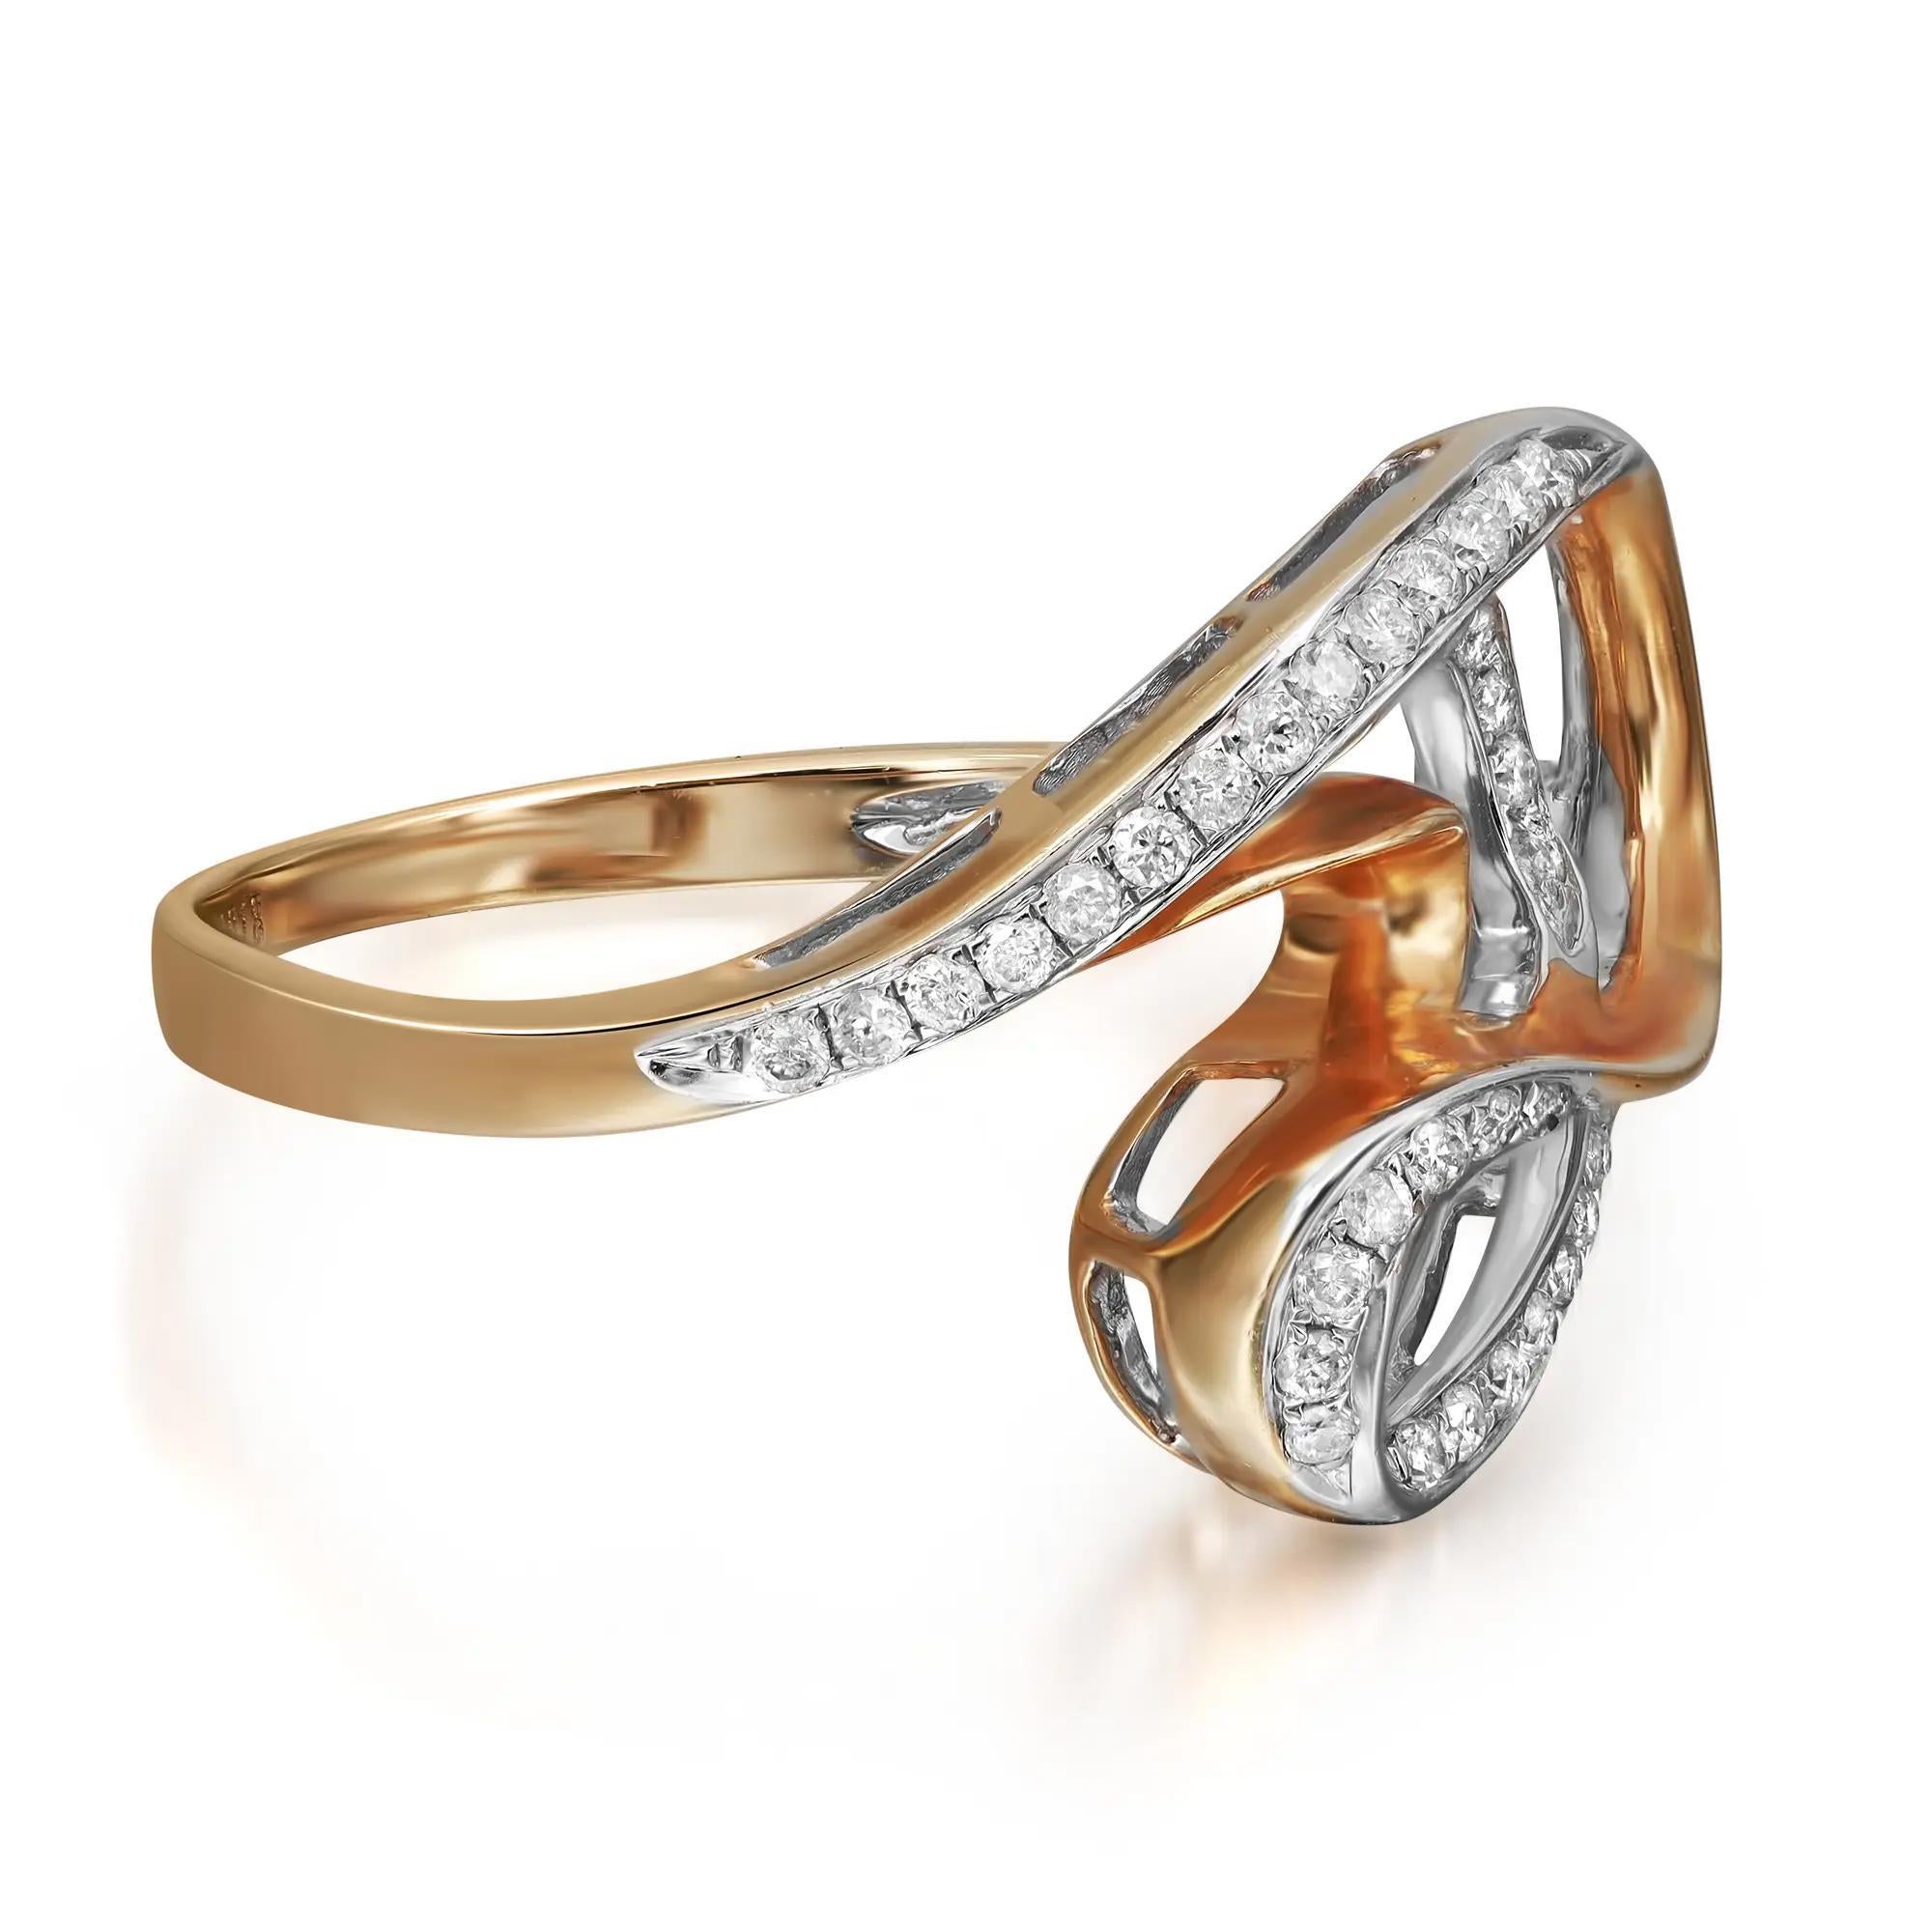 Schicker und eleganter Damen-Diamantring aus hochglanzpoliertem 14 Karat Gelbgold. Dieser Ring zeichnet sich durch in Zacken gefasste, funkelnde, runde Diamanten im Brillantschliff in einem wunderschönen Wirbeldesign von insgesamt 0,23 Karat aus.